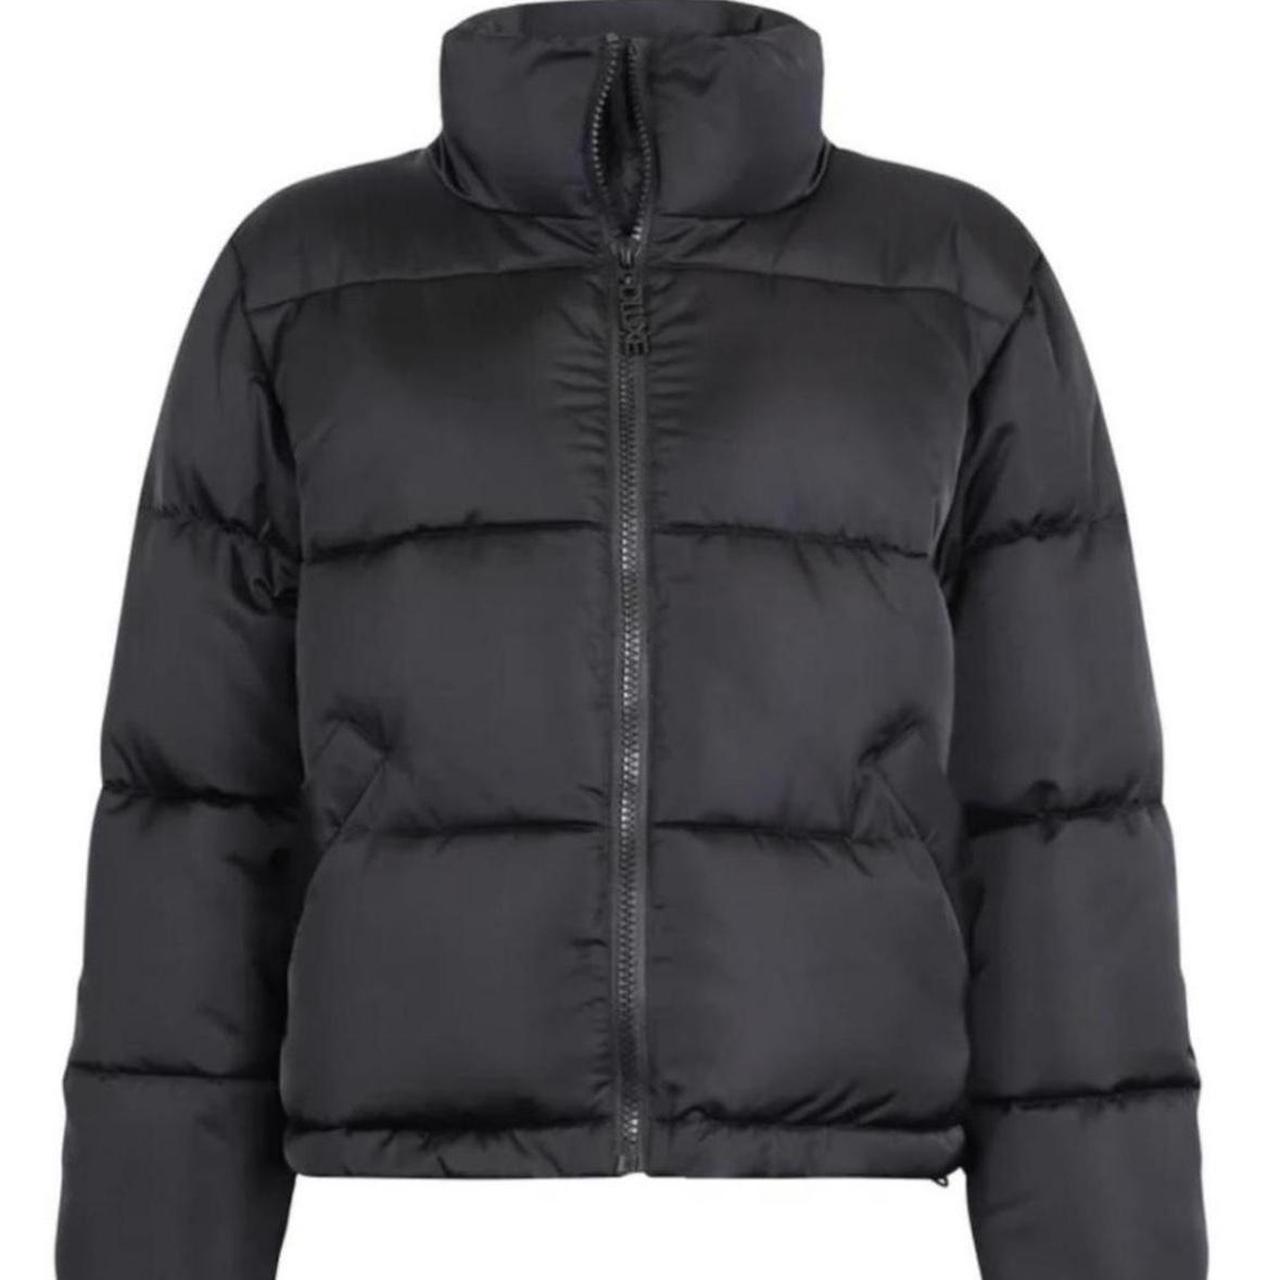 Decjuba D-Luxe short puffer jacket Super warm... - Depop